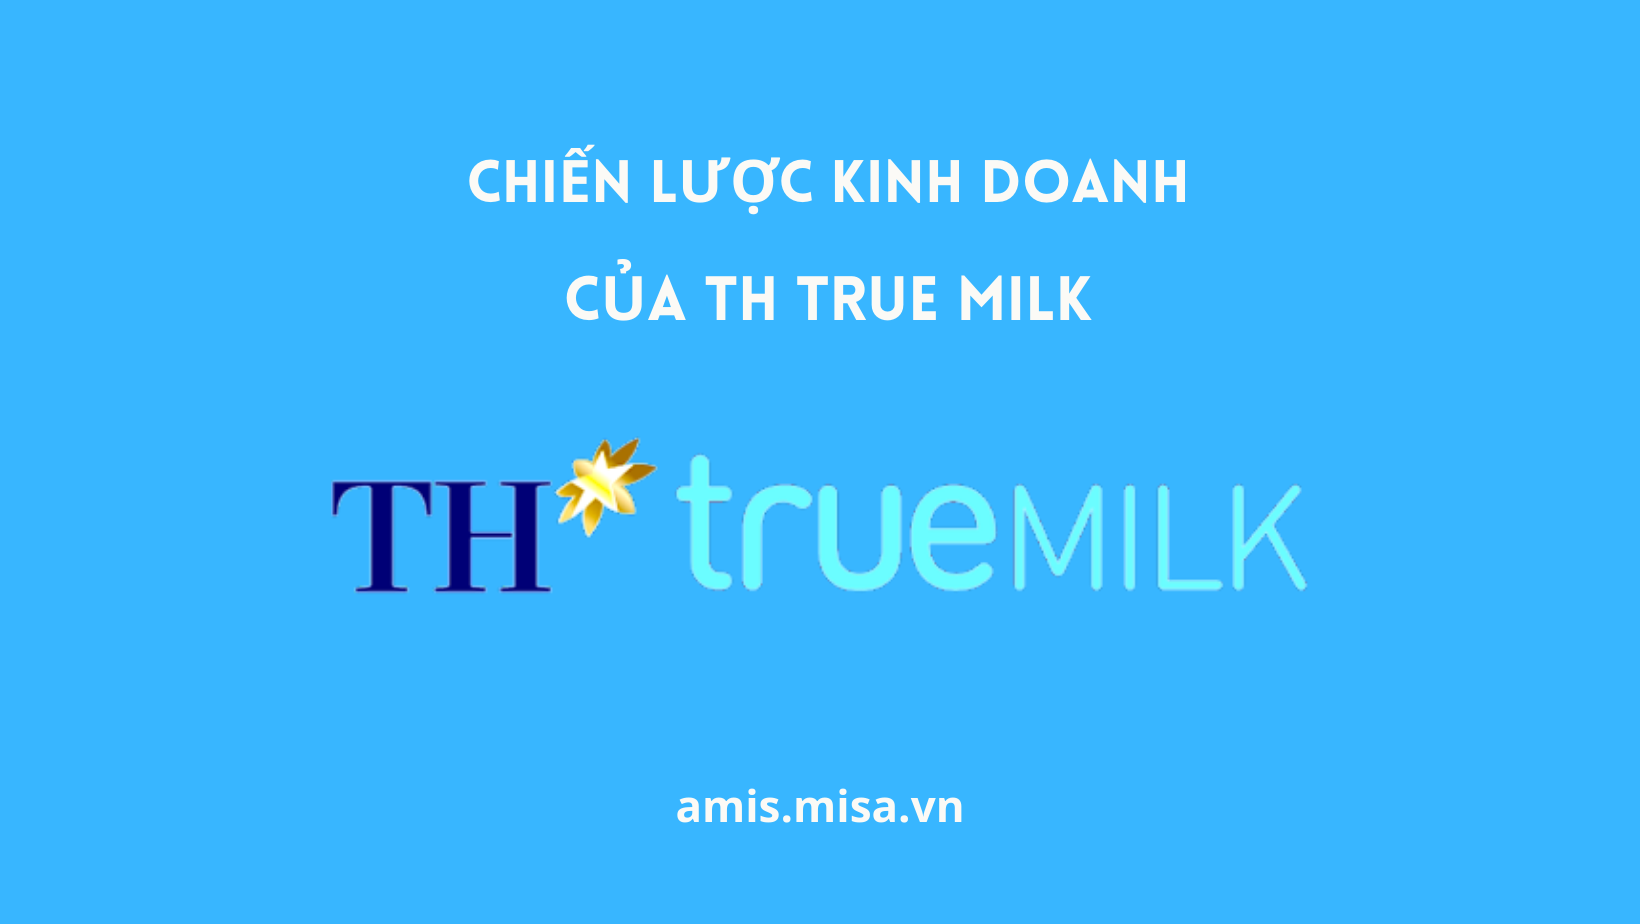 chiến lược kinh doanh của th true milk